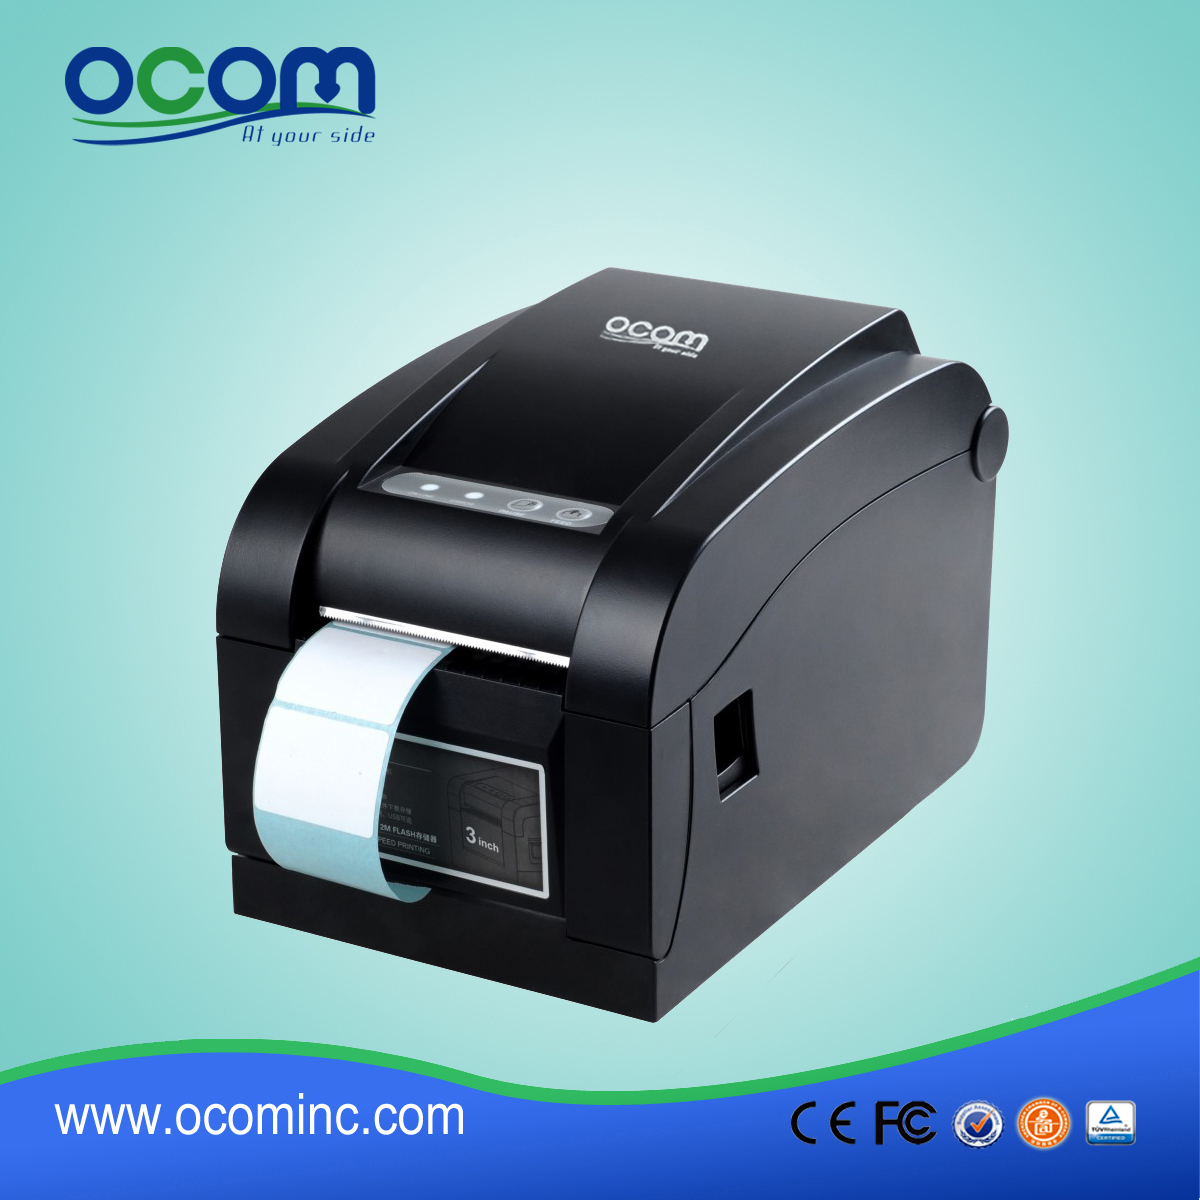 OCBP-005 Thermische printer met 3 inch thermokopieerapparaat met directe thermische codering